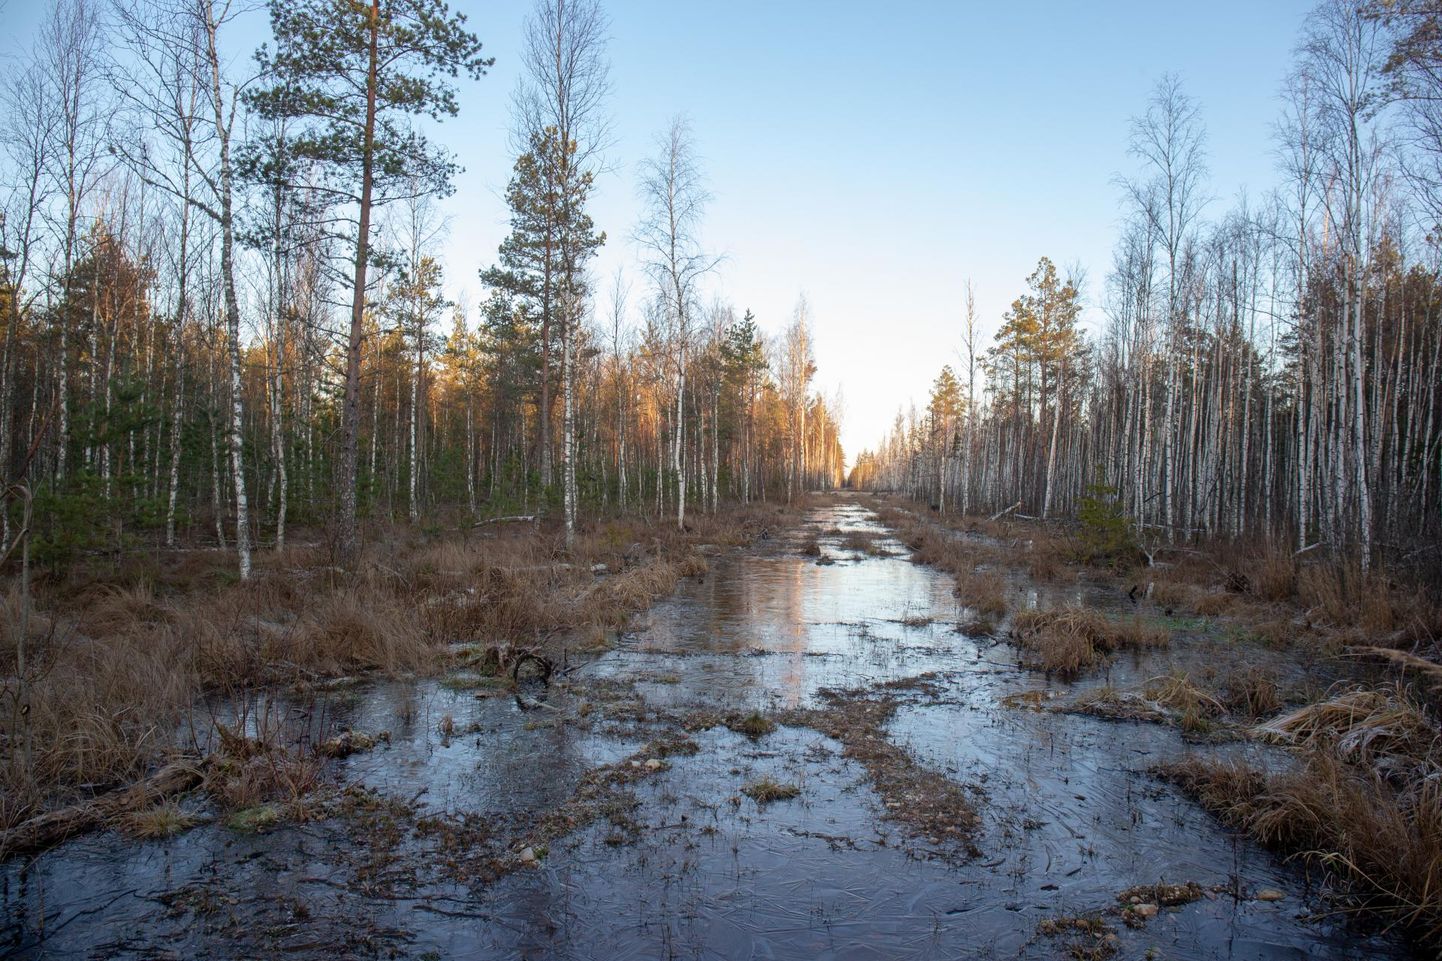 Soomaa rahvuspark sai Euroopa kaitsealade liidult kvaliteedimärgi, mis näitab, et turismi arendatakse siin loodust hoidvate põhimõtete järgi.